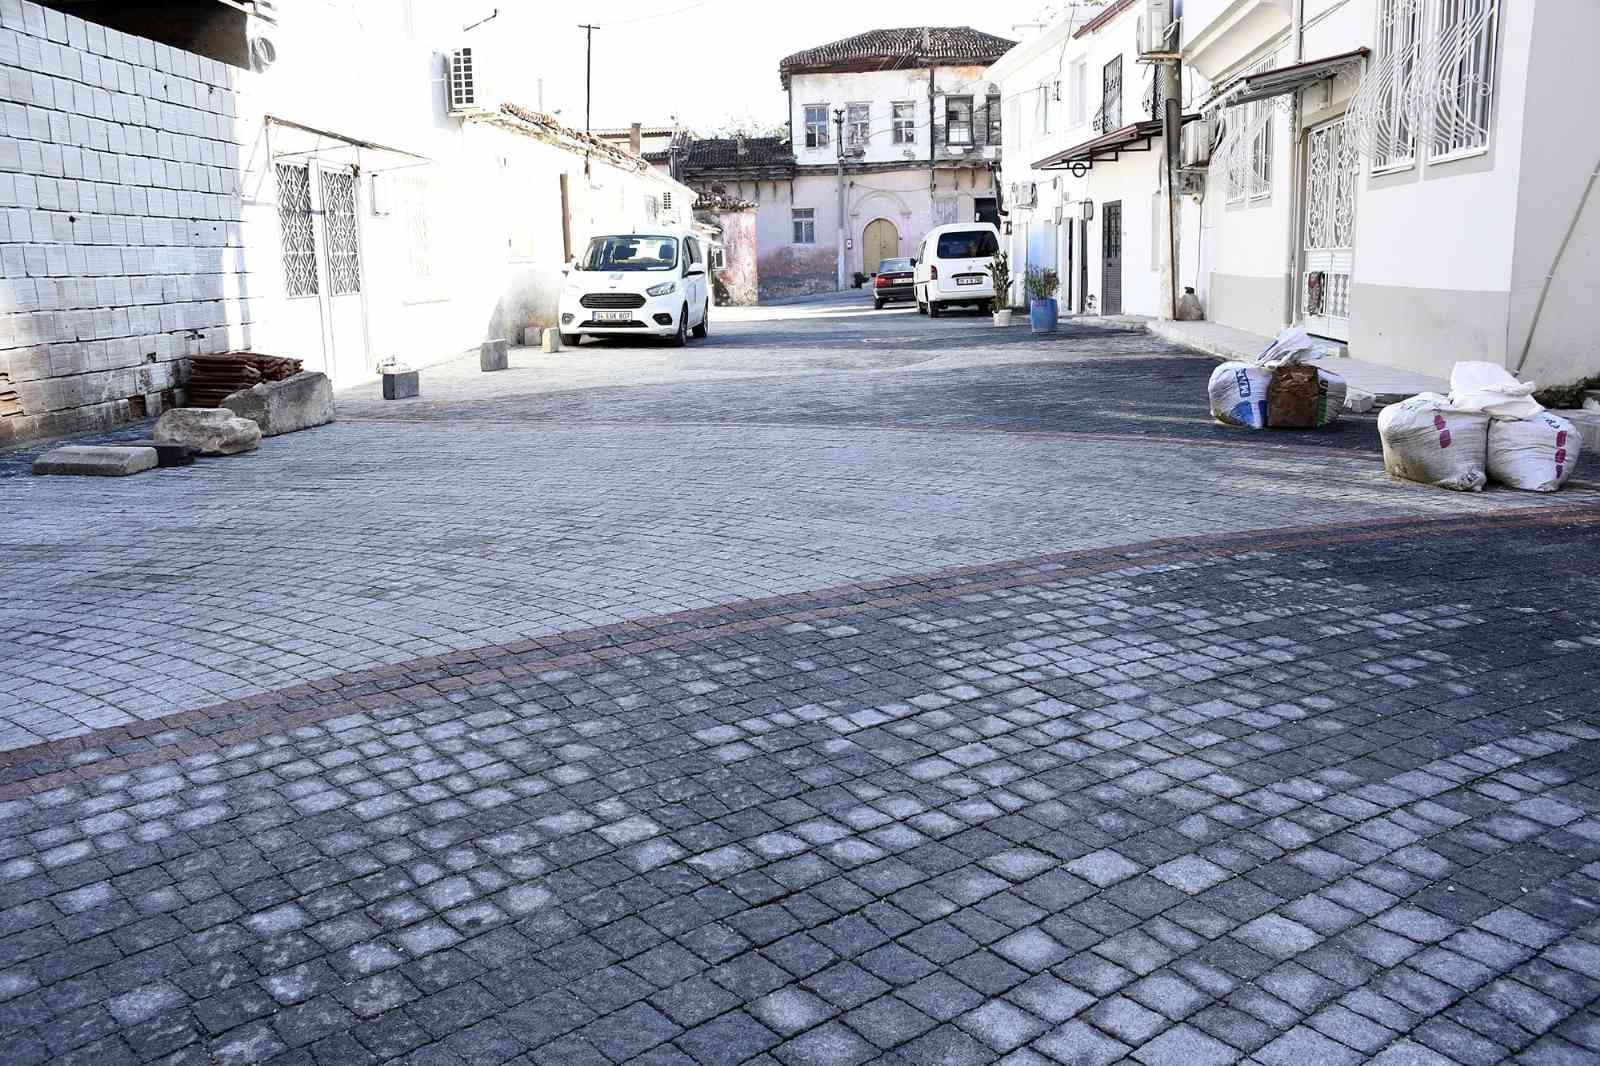 Eski Kuşadası’nın tarihi sokakları aslına uygun olarak yenilendi